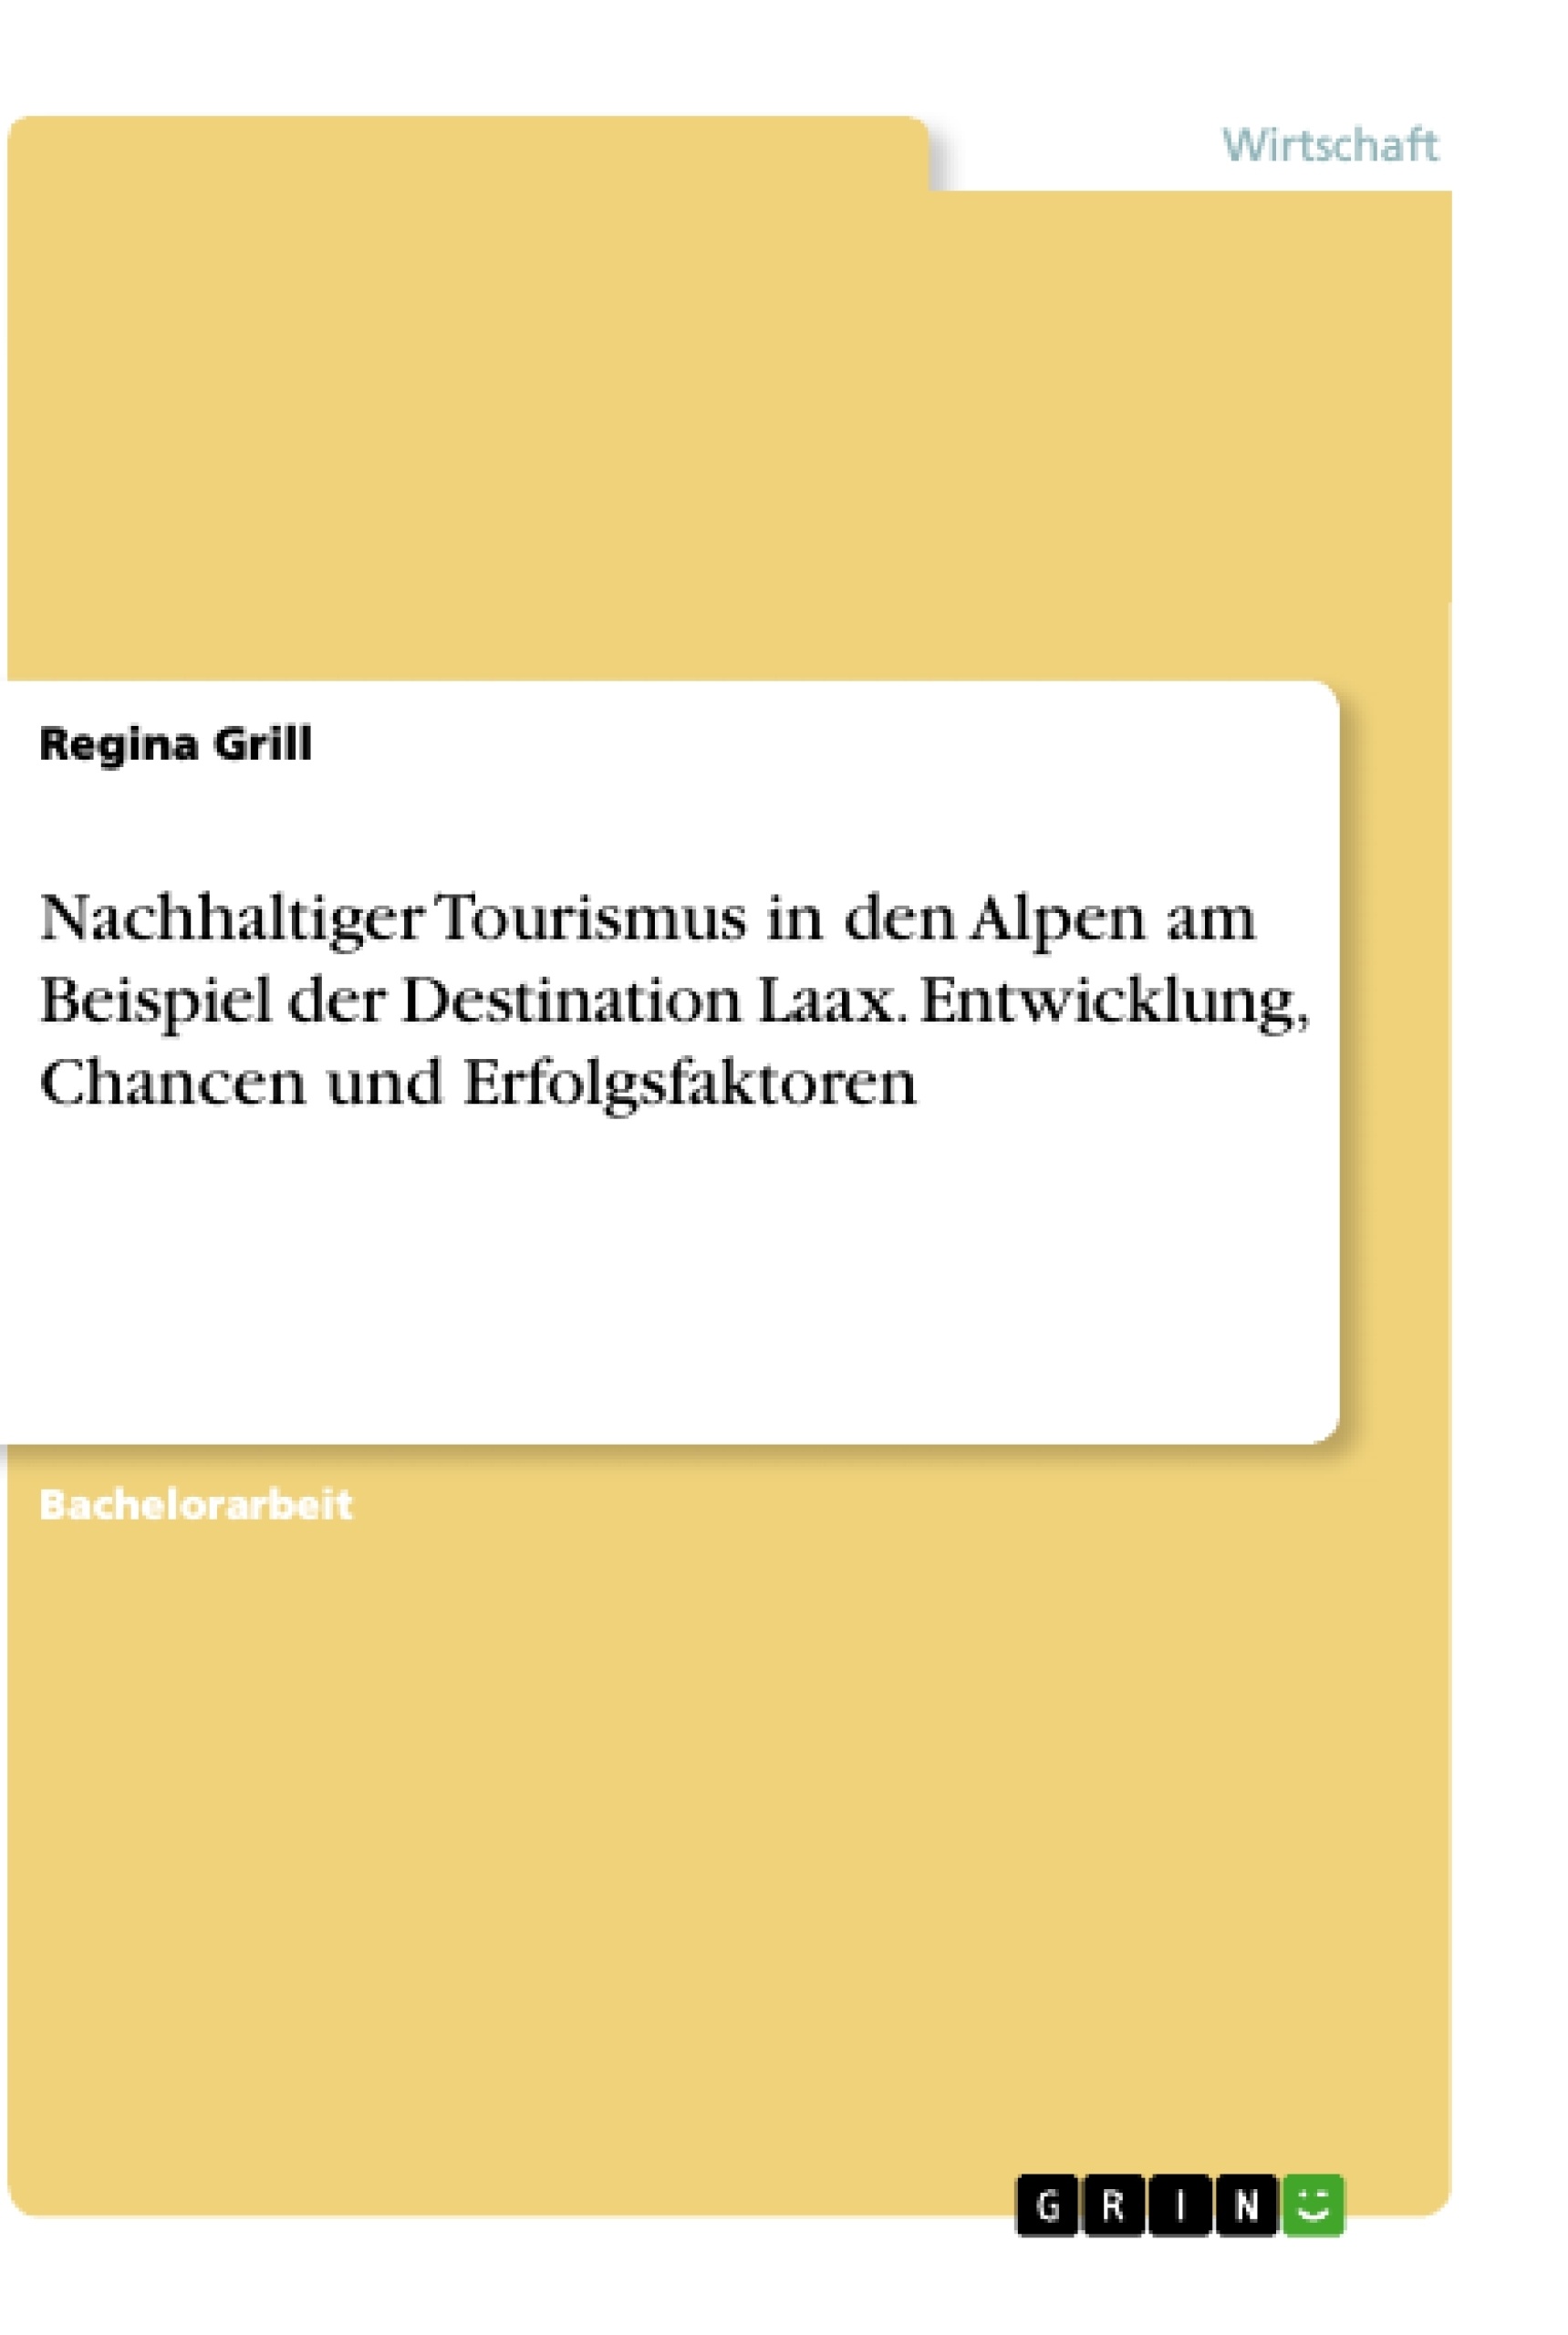 Título: Nachhaltiger Tourismus in den Alpen am Beispiel der Destination Laax. Entwicklung, Chancen und Erfolgsfaktoren